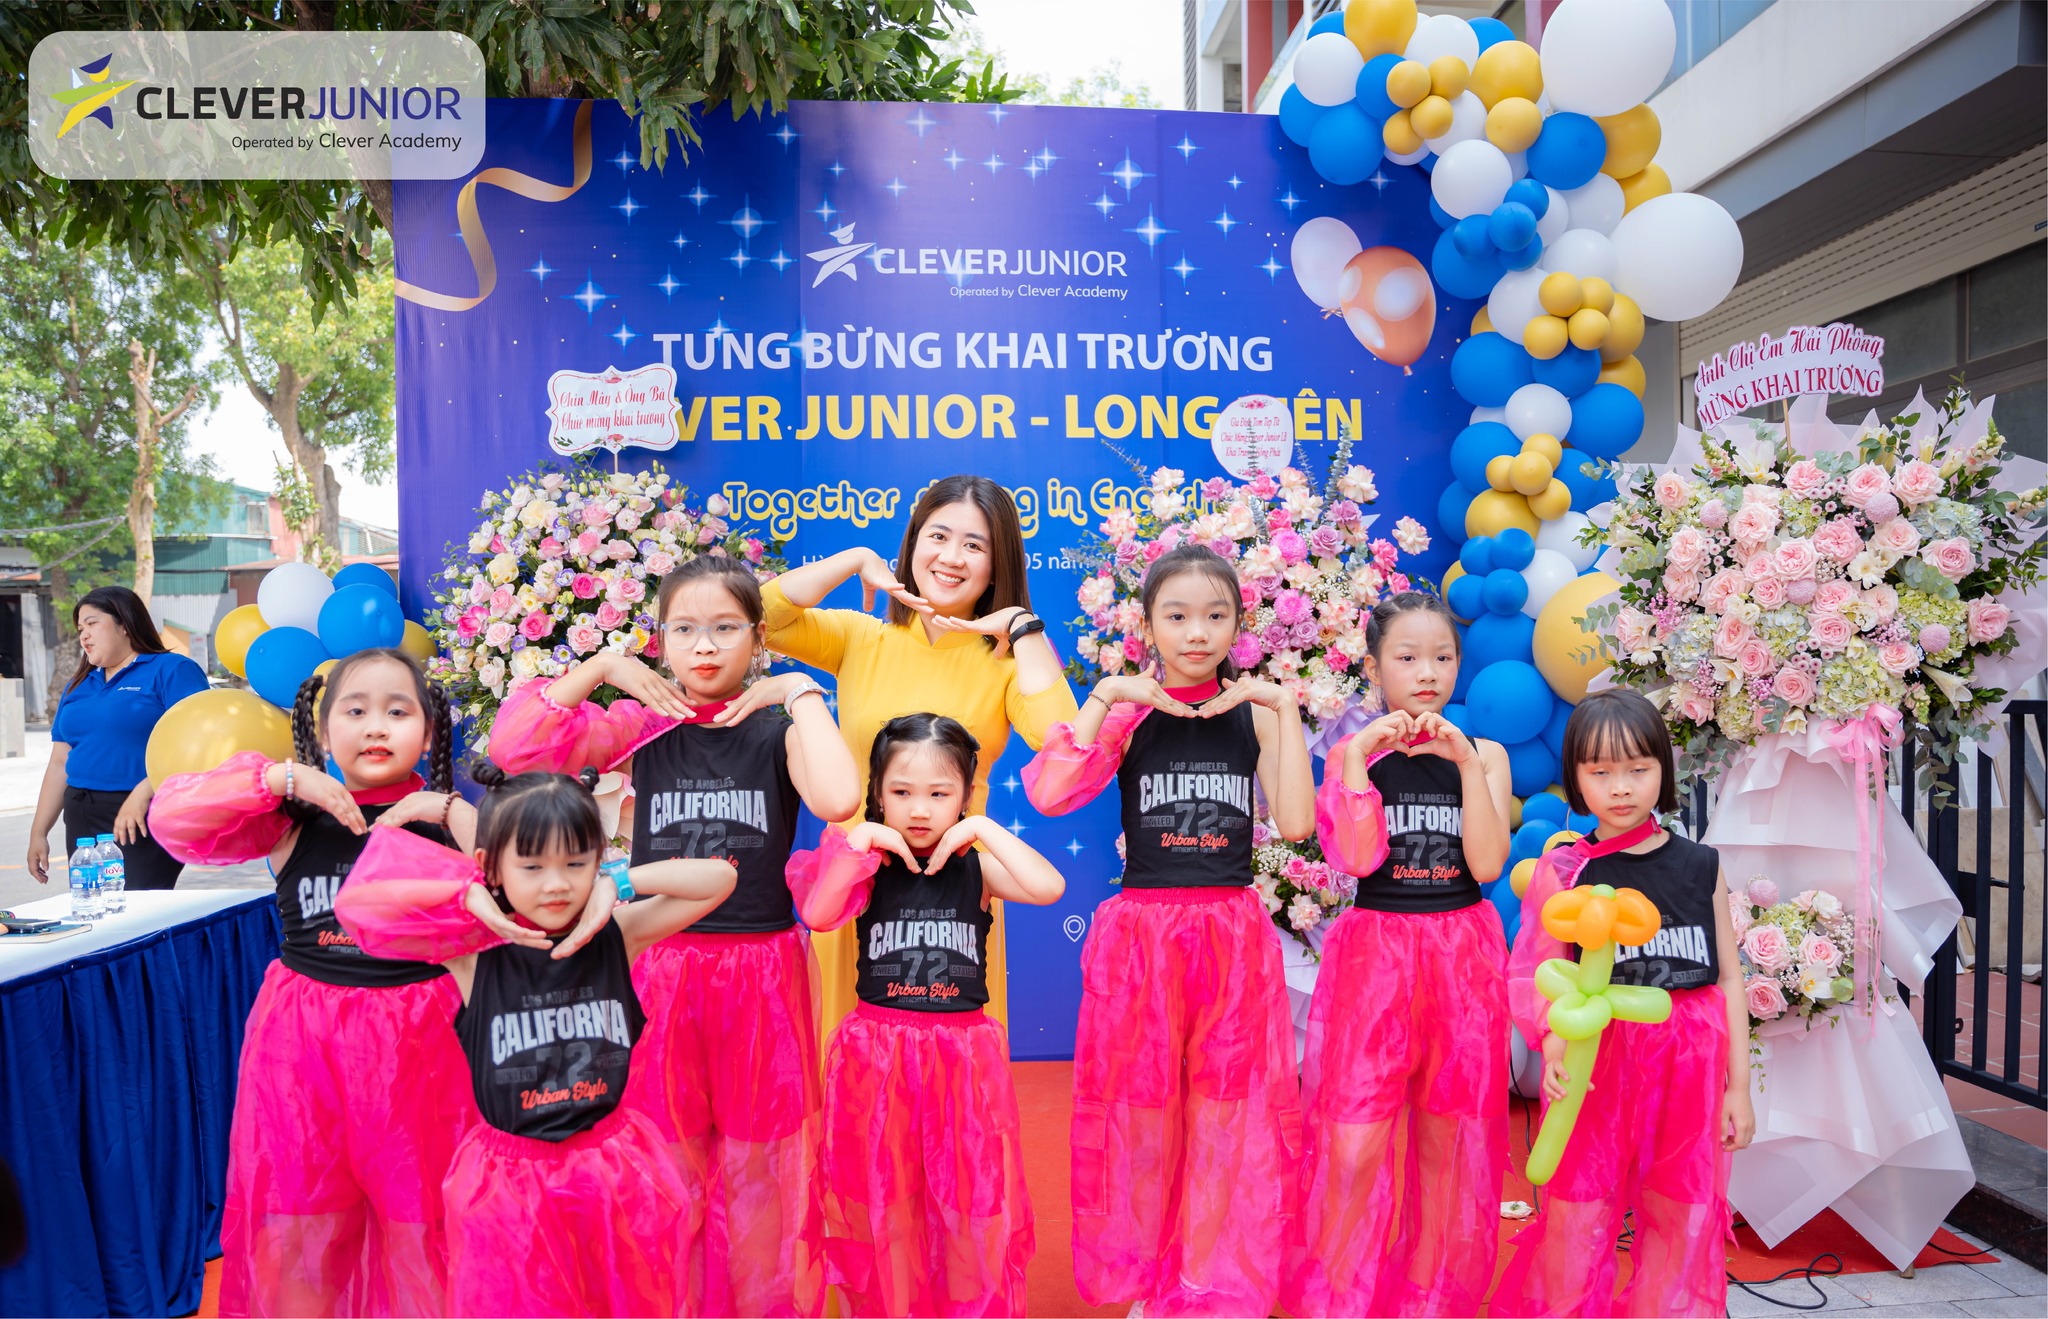 Clever Academy tổ chức Lễ Khai Trương Clever Junior Long Biên